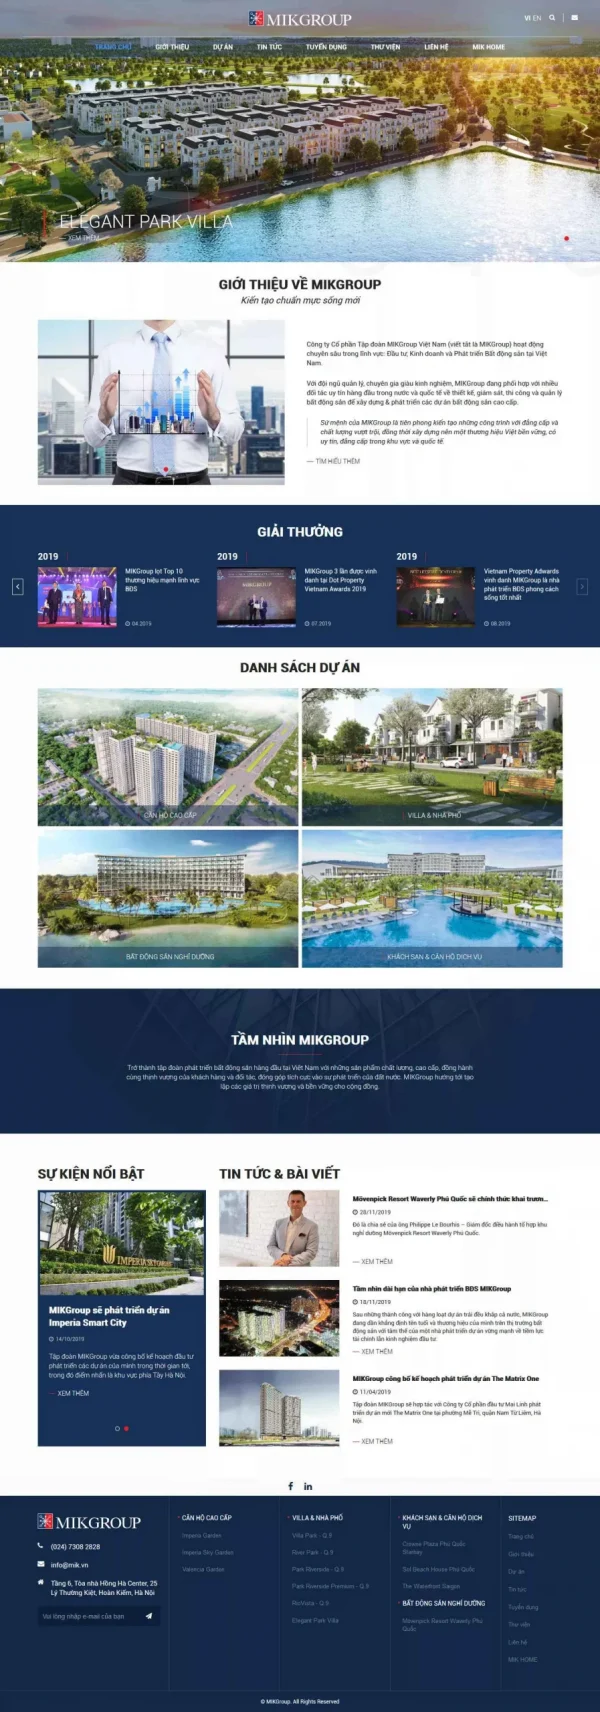 Mẫu giao diện website bất động sản Tập đoàn Mikgroup Việt Nam